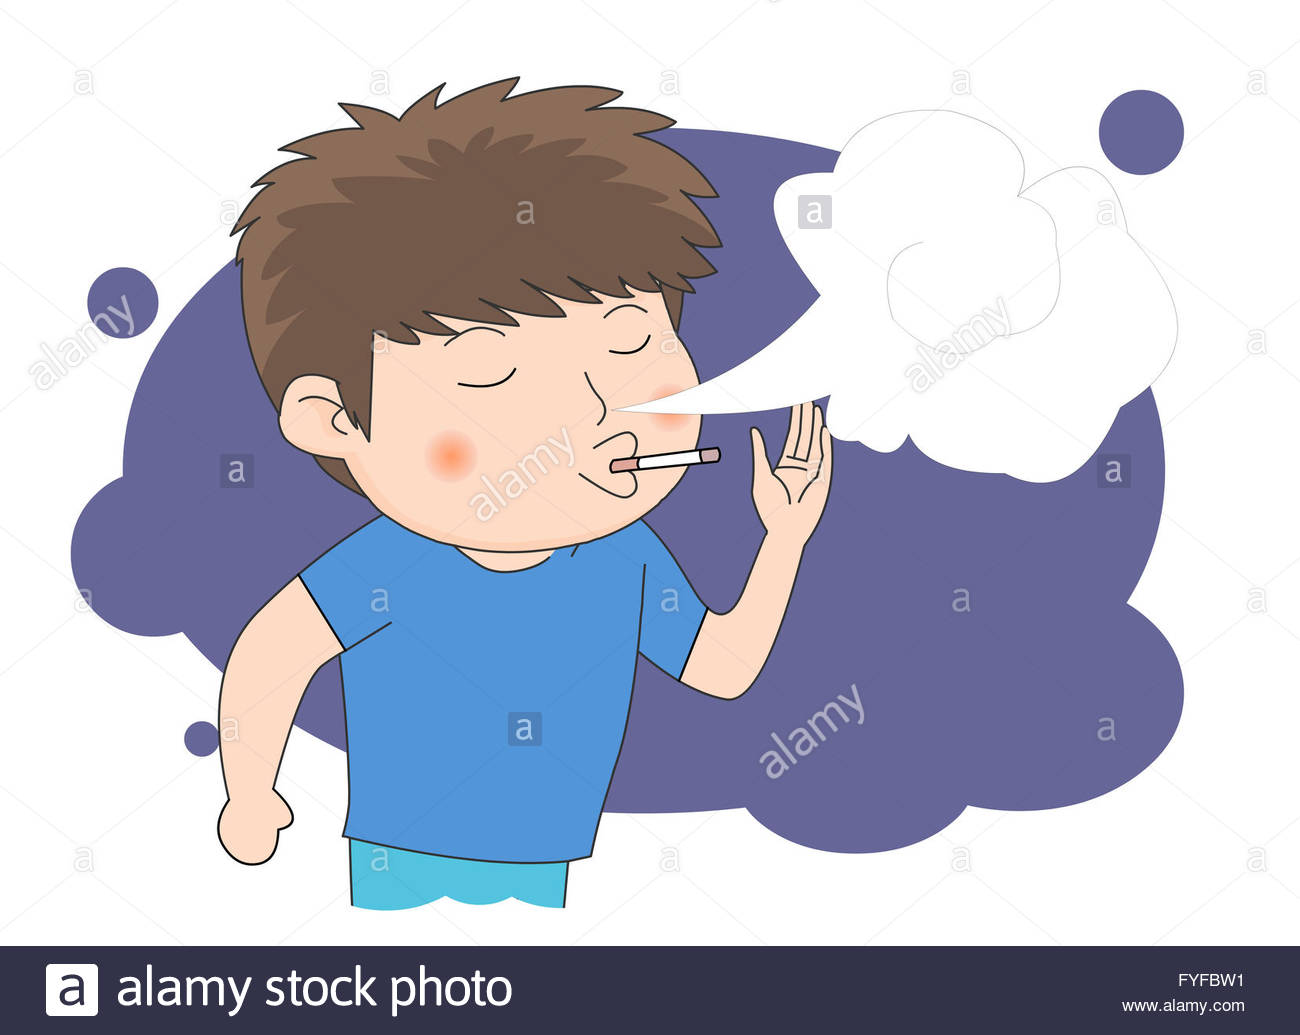 Smoking Addiction Cartoon Stock Photos & Smoking Addiction Cartoon ...